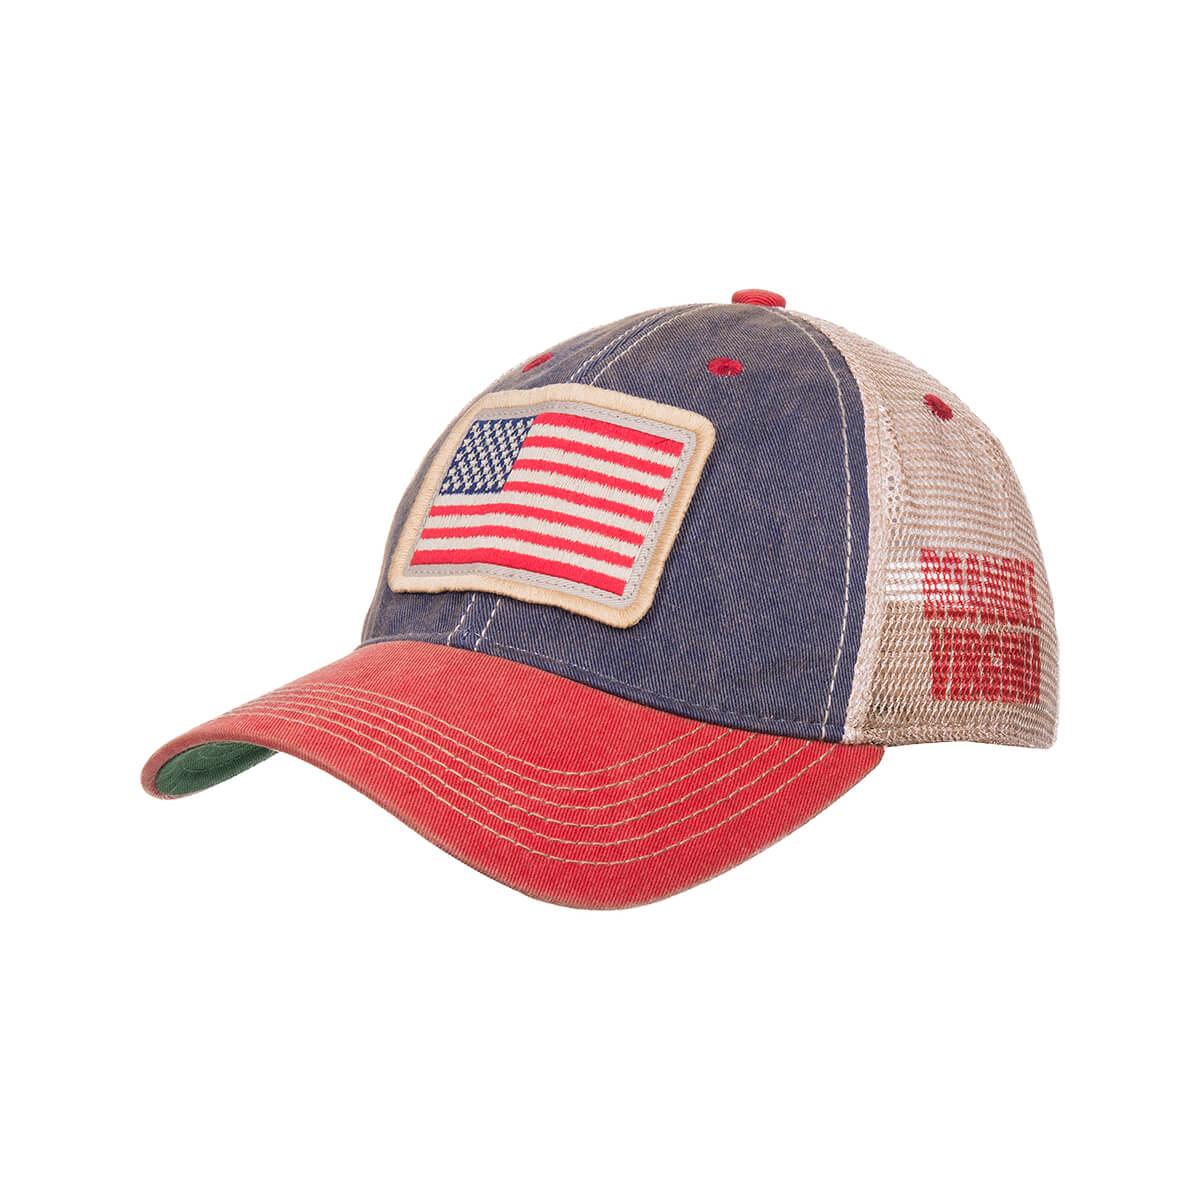 LEGACY HATS | American Flag Trucker Hat - Roanoke